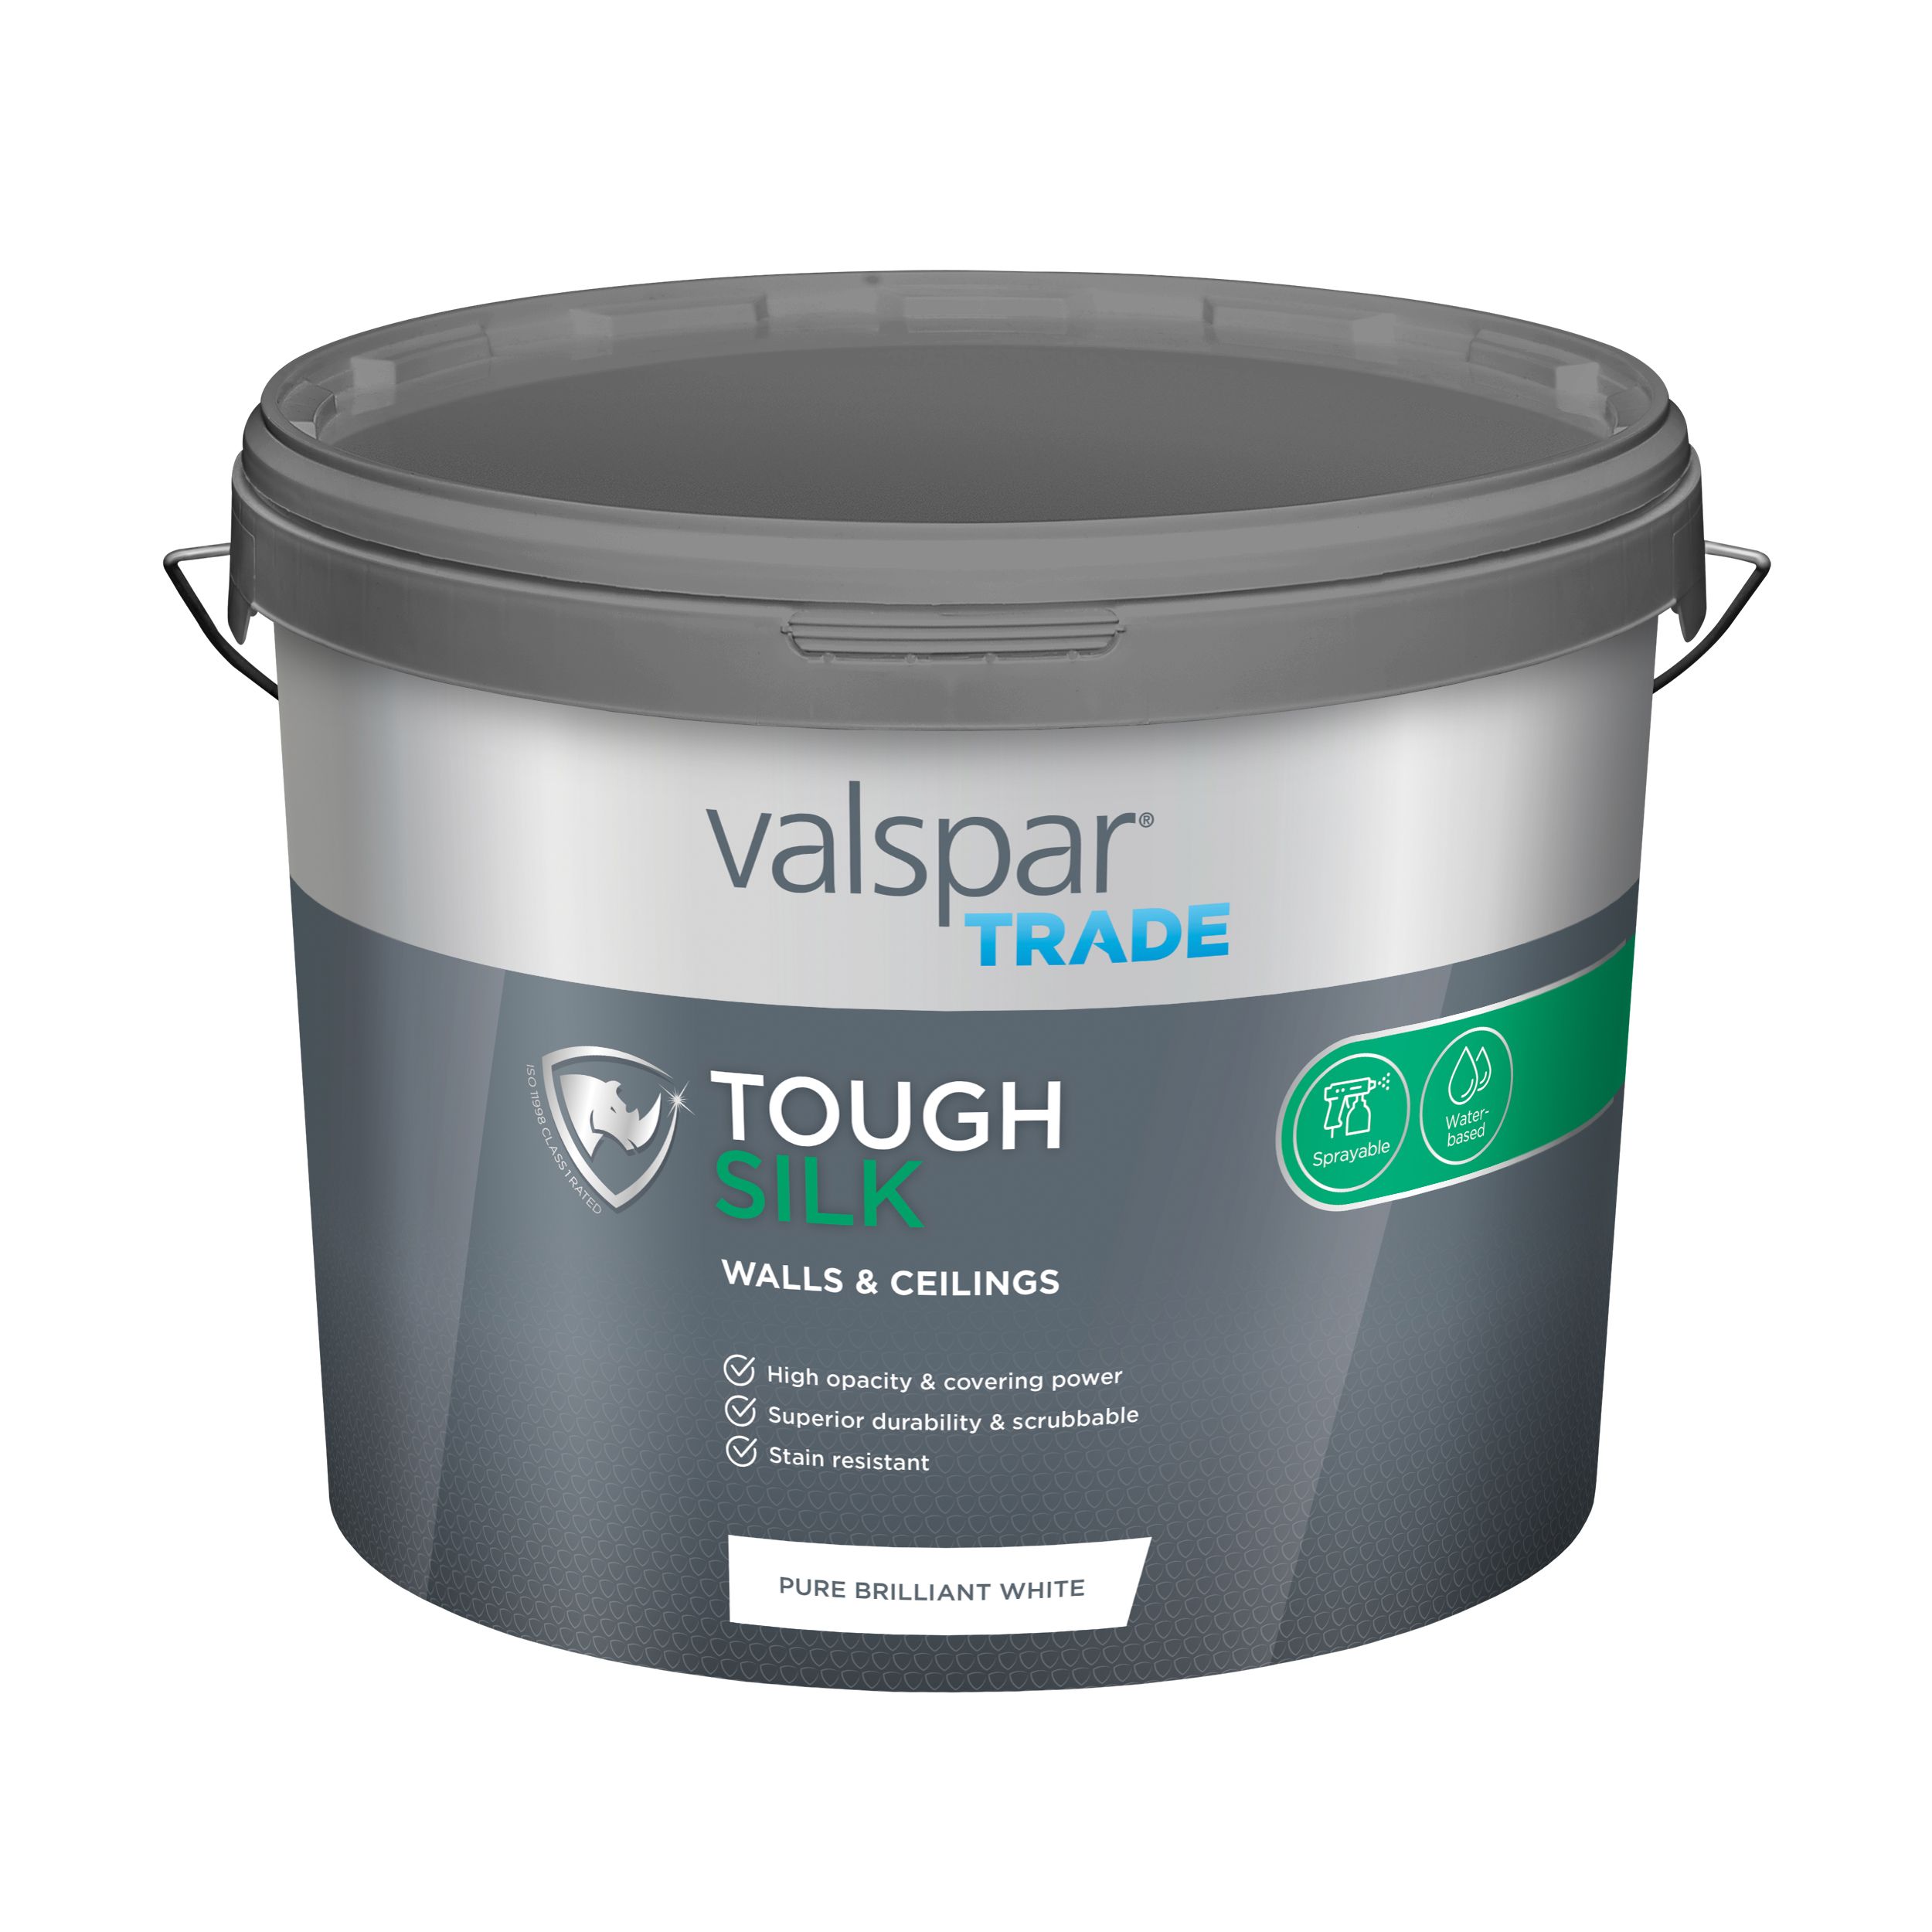 Valspar Trade Tough Pure Brilliant White Silk Emulsion paint, 10L